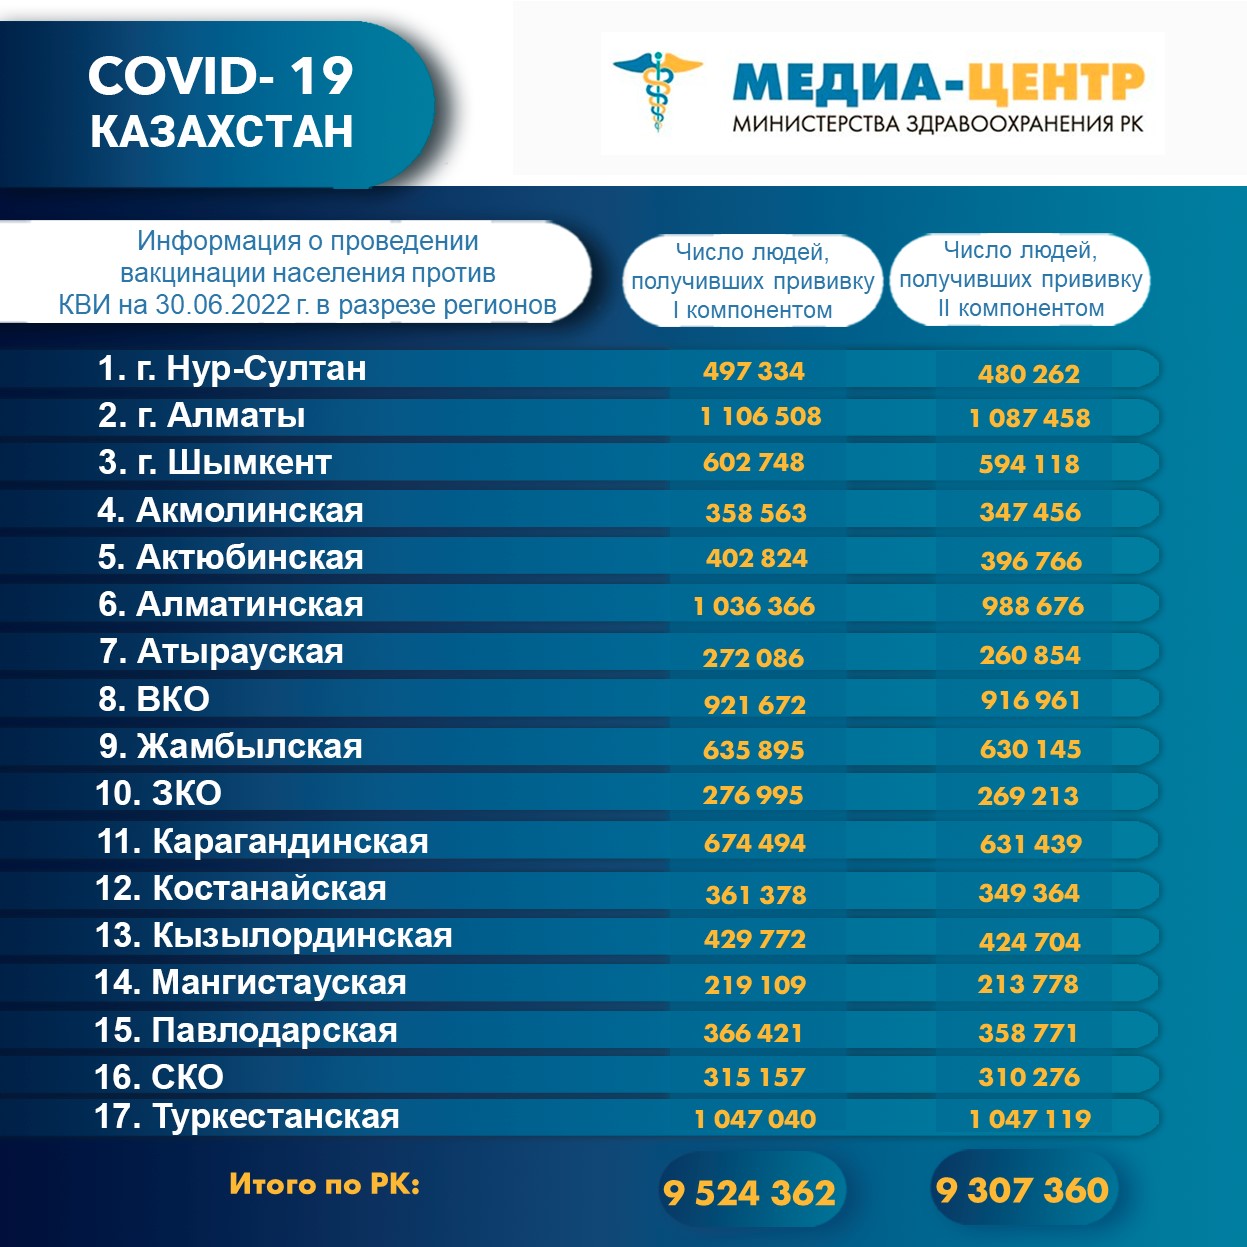 Количество людей, получивших вакцину Рfizer в Казахстане по состоянию на 30 июня 2022 года